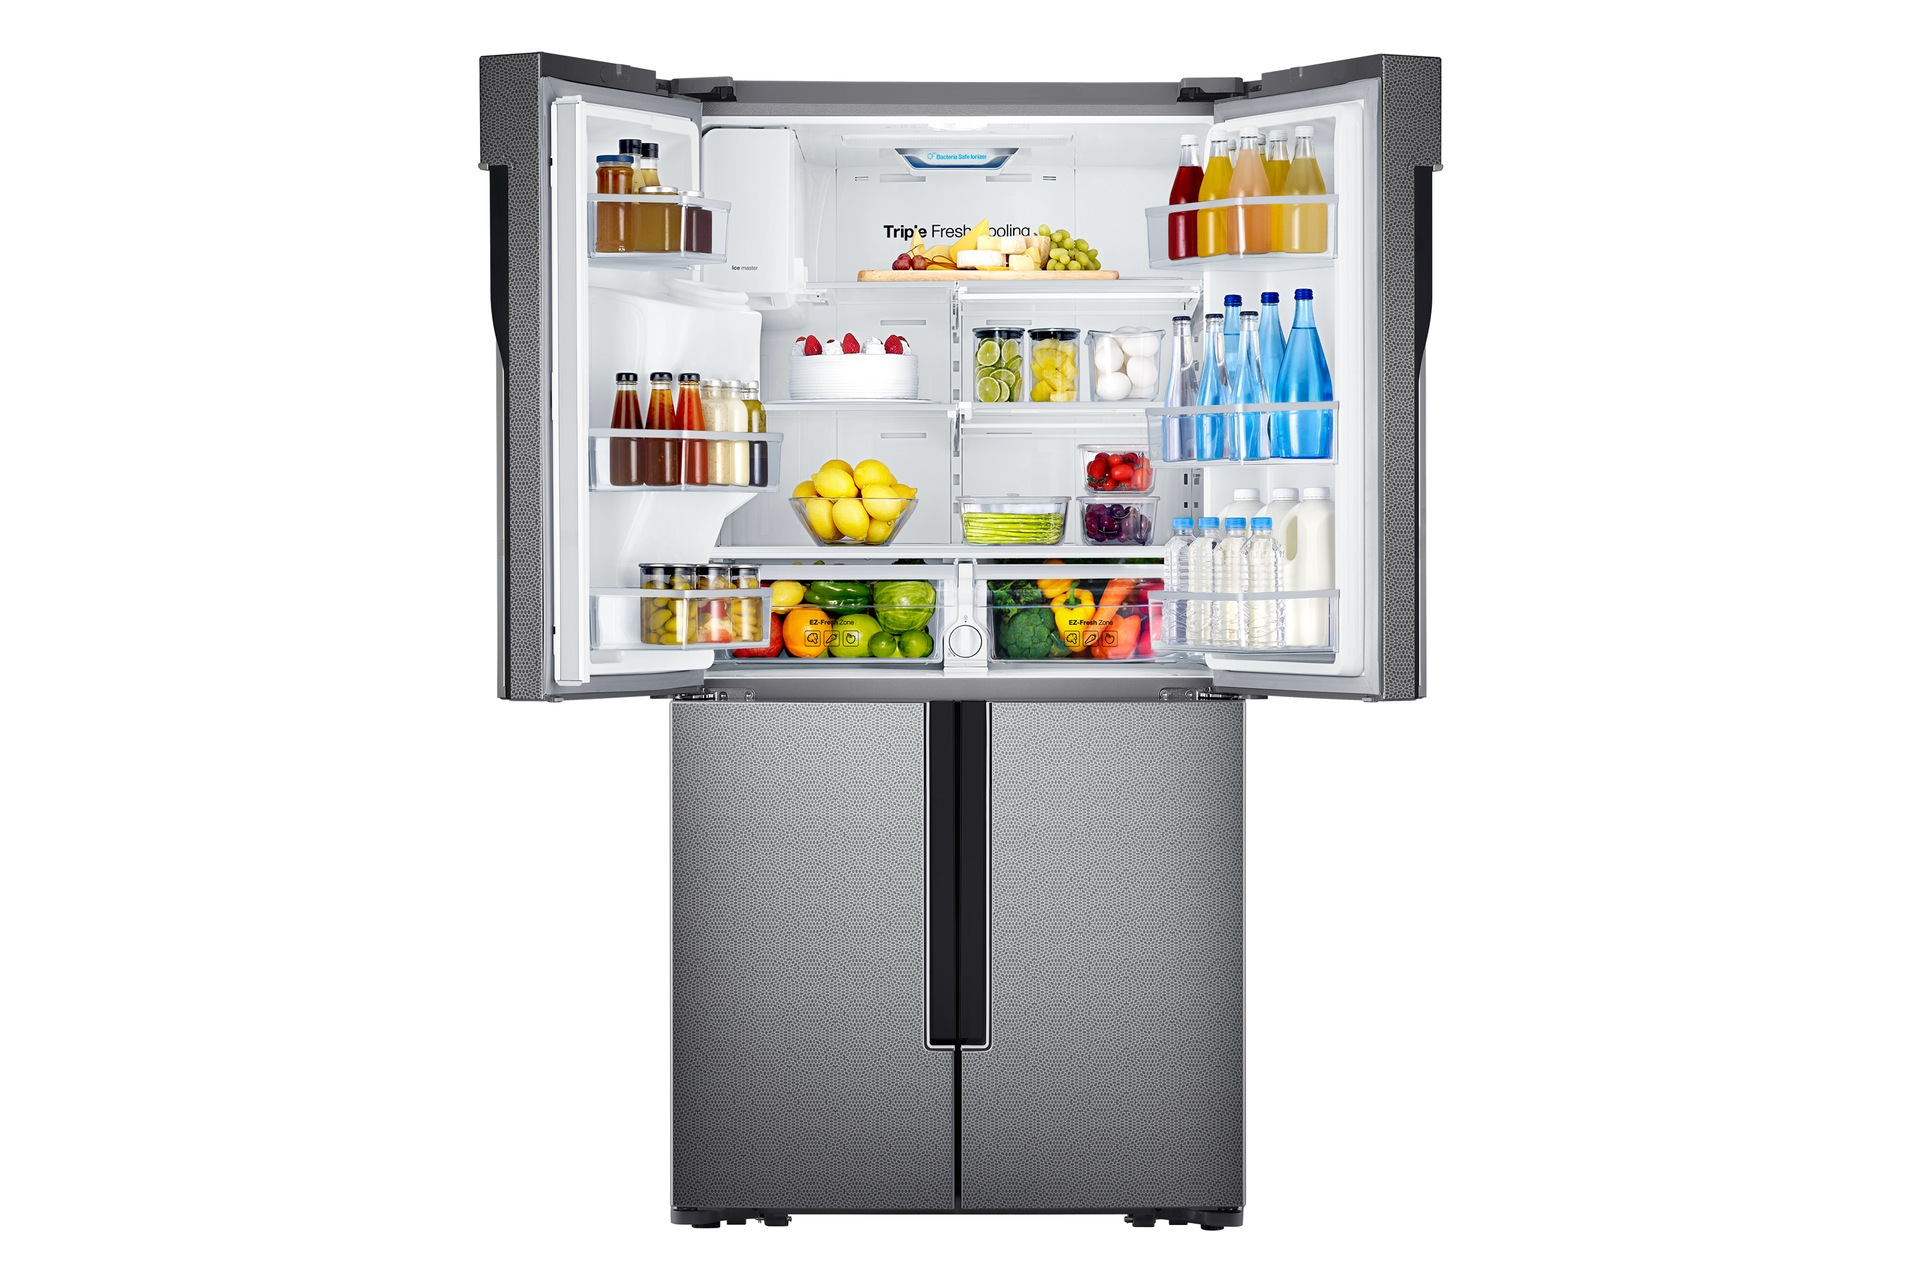 samsung-double-door-refrigerator-price-french-door-fridge-specs-india